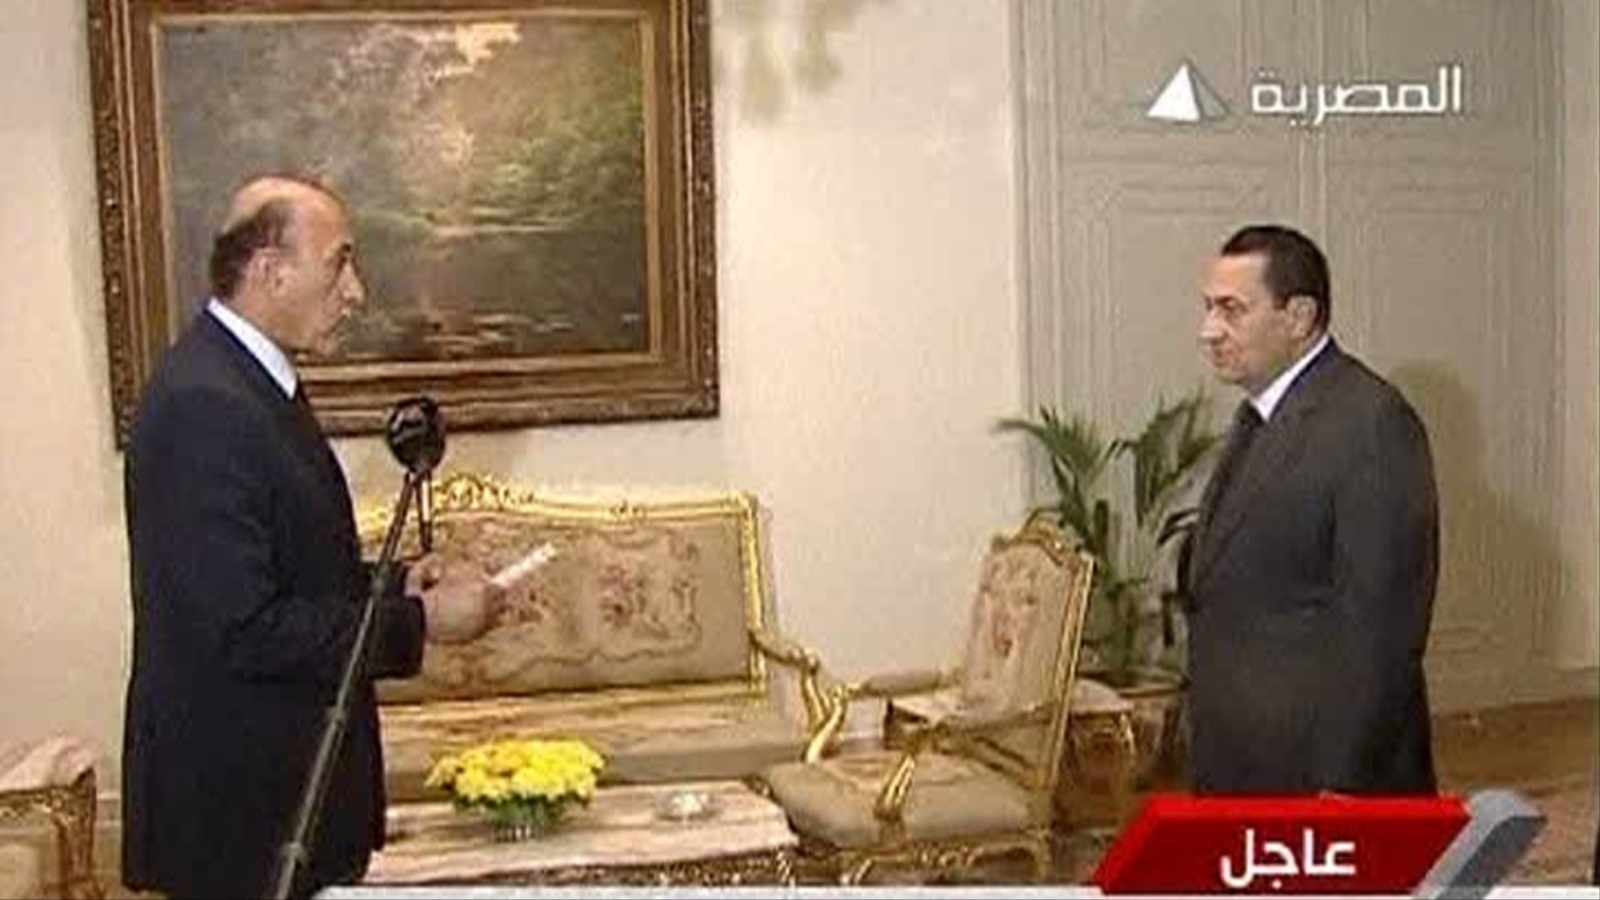 مبارك ألقى خطابا يوم 29 يناير أعلن فيه تعيين اللواء عمر سليمان نائبا لرئيس الجمهورية رويترز